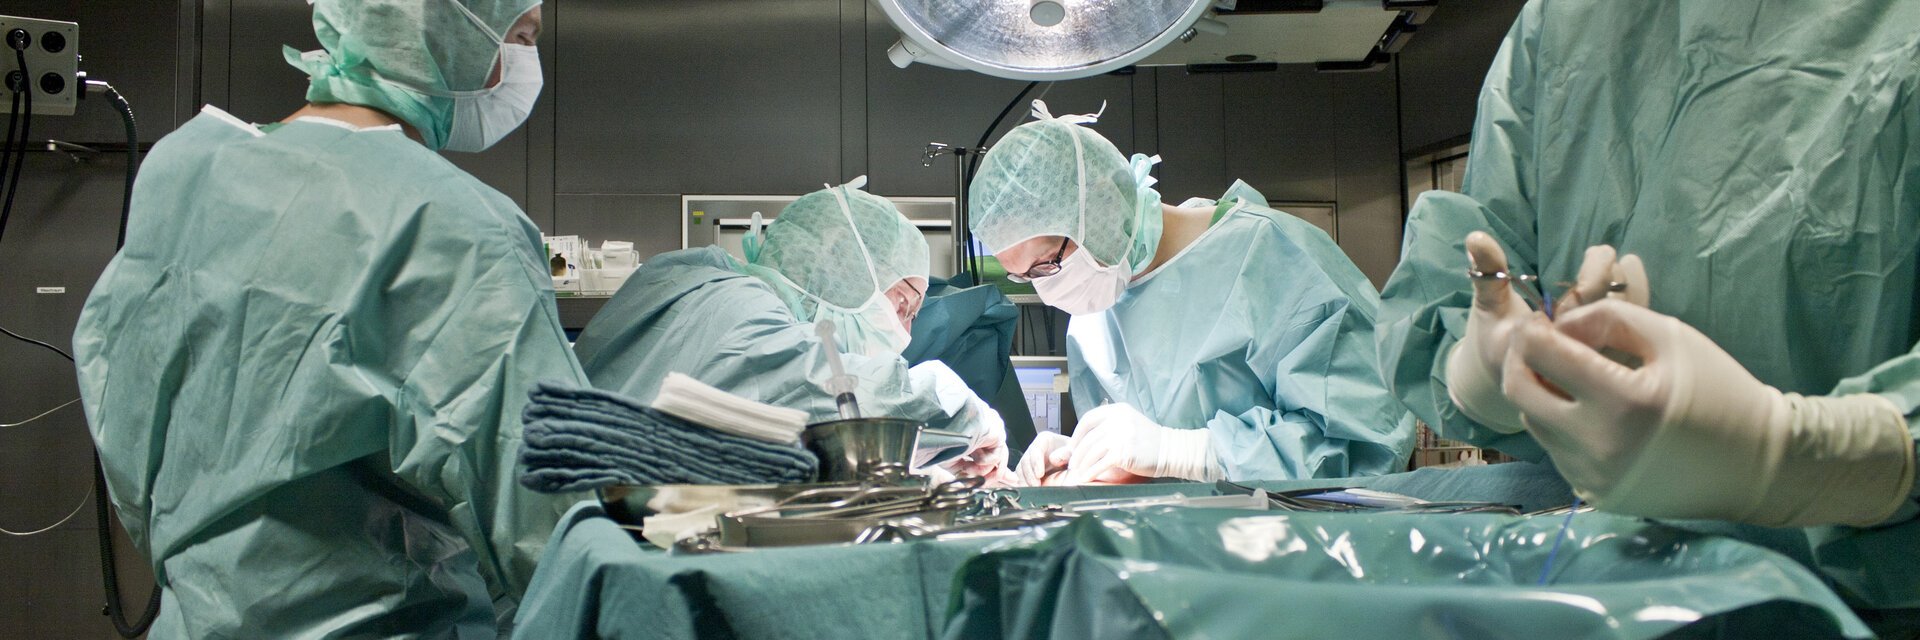 Ã„rzte am OP-Tisch wÃ¤hrend einer Operation